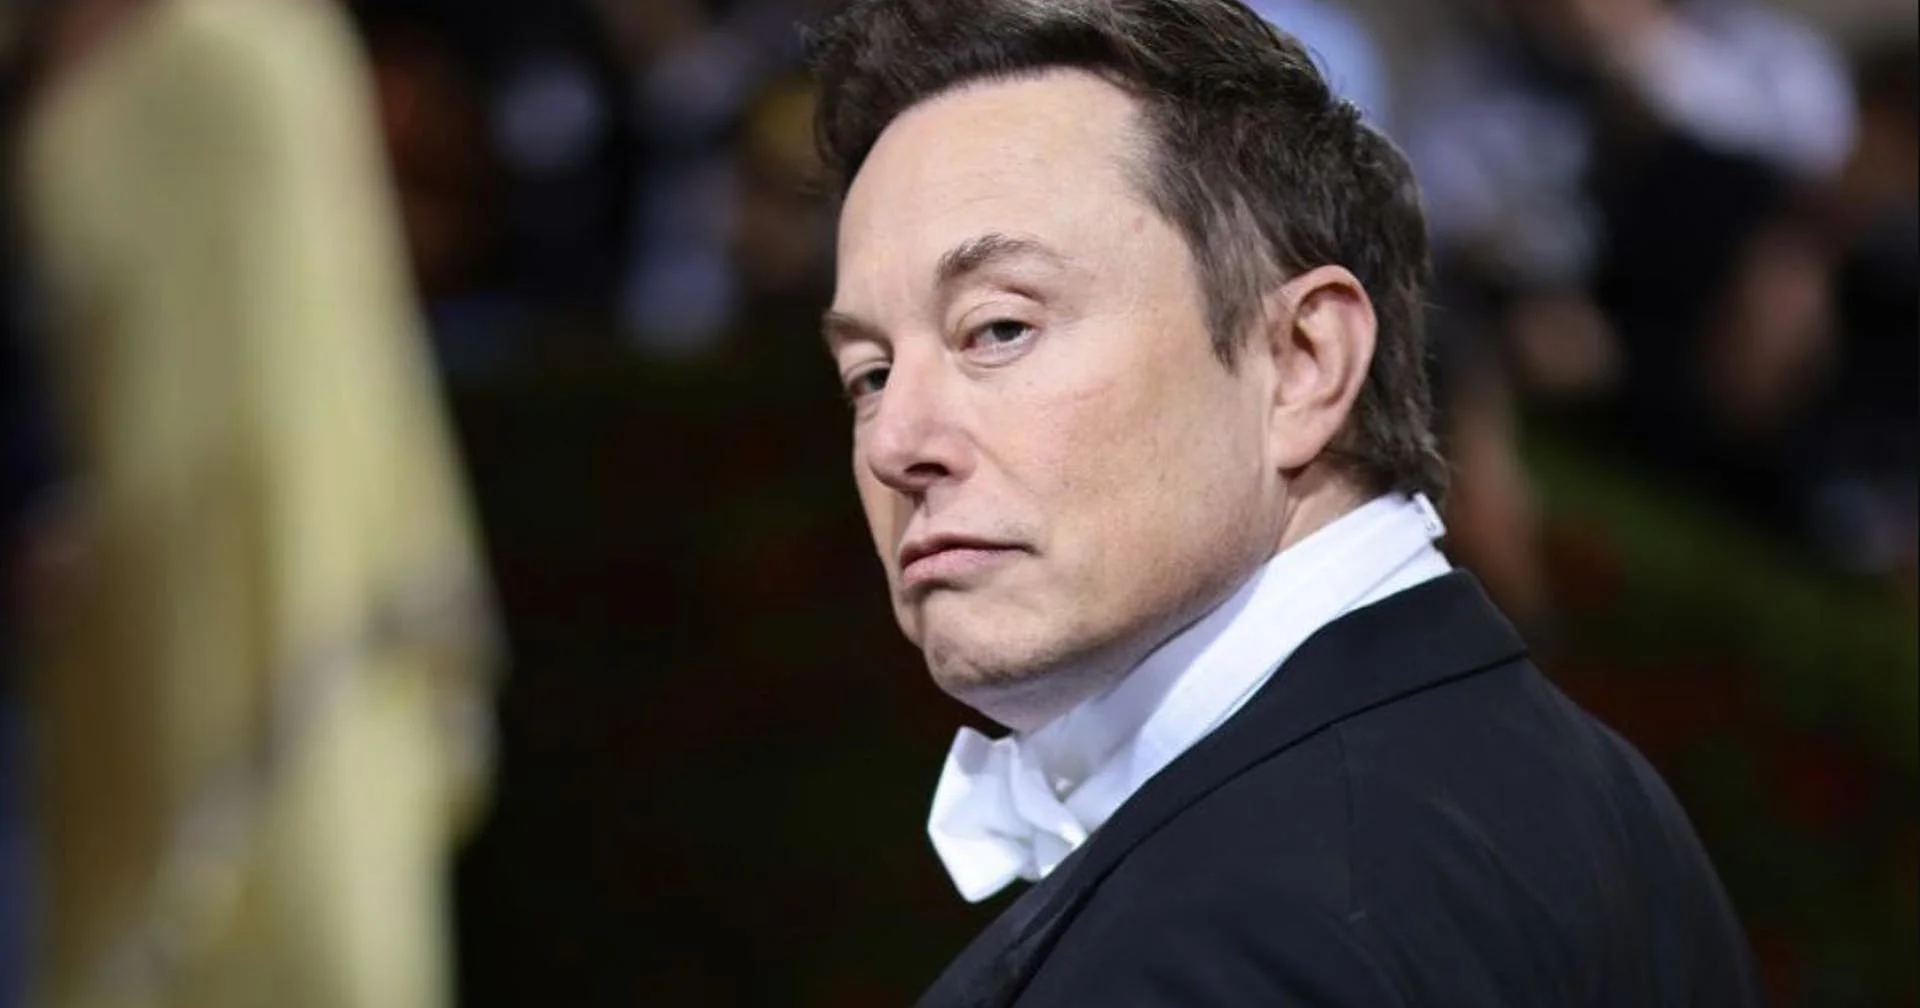 Elon Musk จะยกเลิกฟีเจอร์บล็อกใน X หรือ Twitter เพราะเป็นฟีเจอร์ที่ไม่สมควรมี